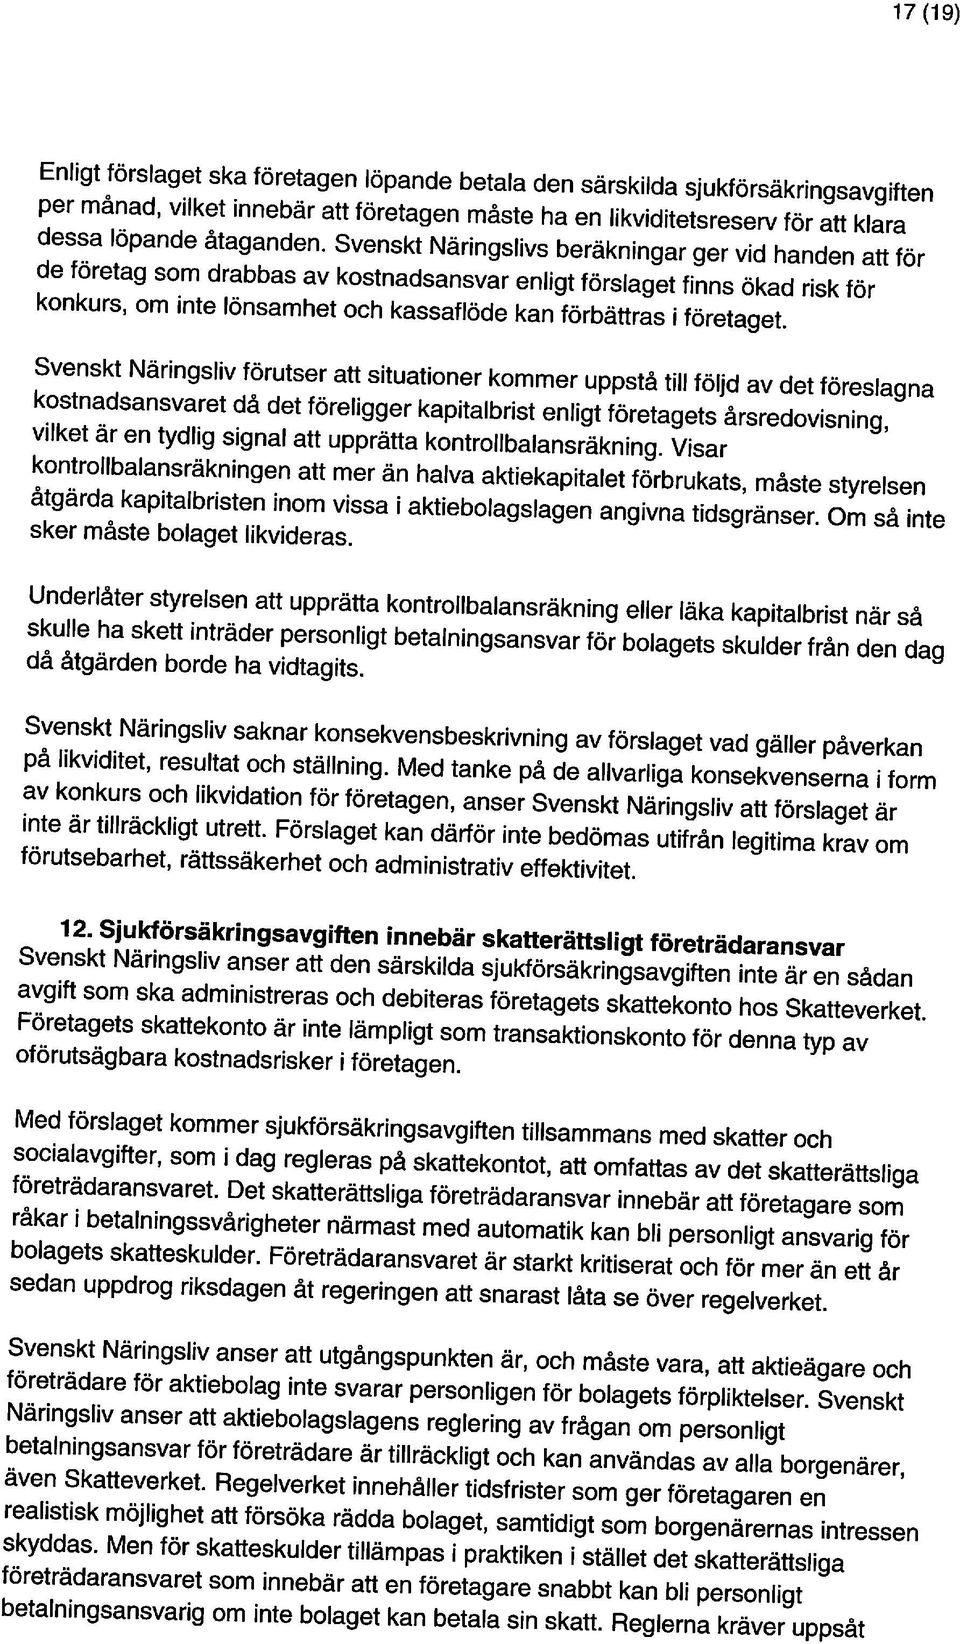 Svenskt Näringslivs beräkningar ger vid handen att för per månad, vilket innebär att företagen måste ha en likviditetsreserv för att klara Enligt förslaget ska företagen löpande betala den särskilda